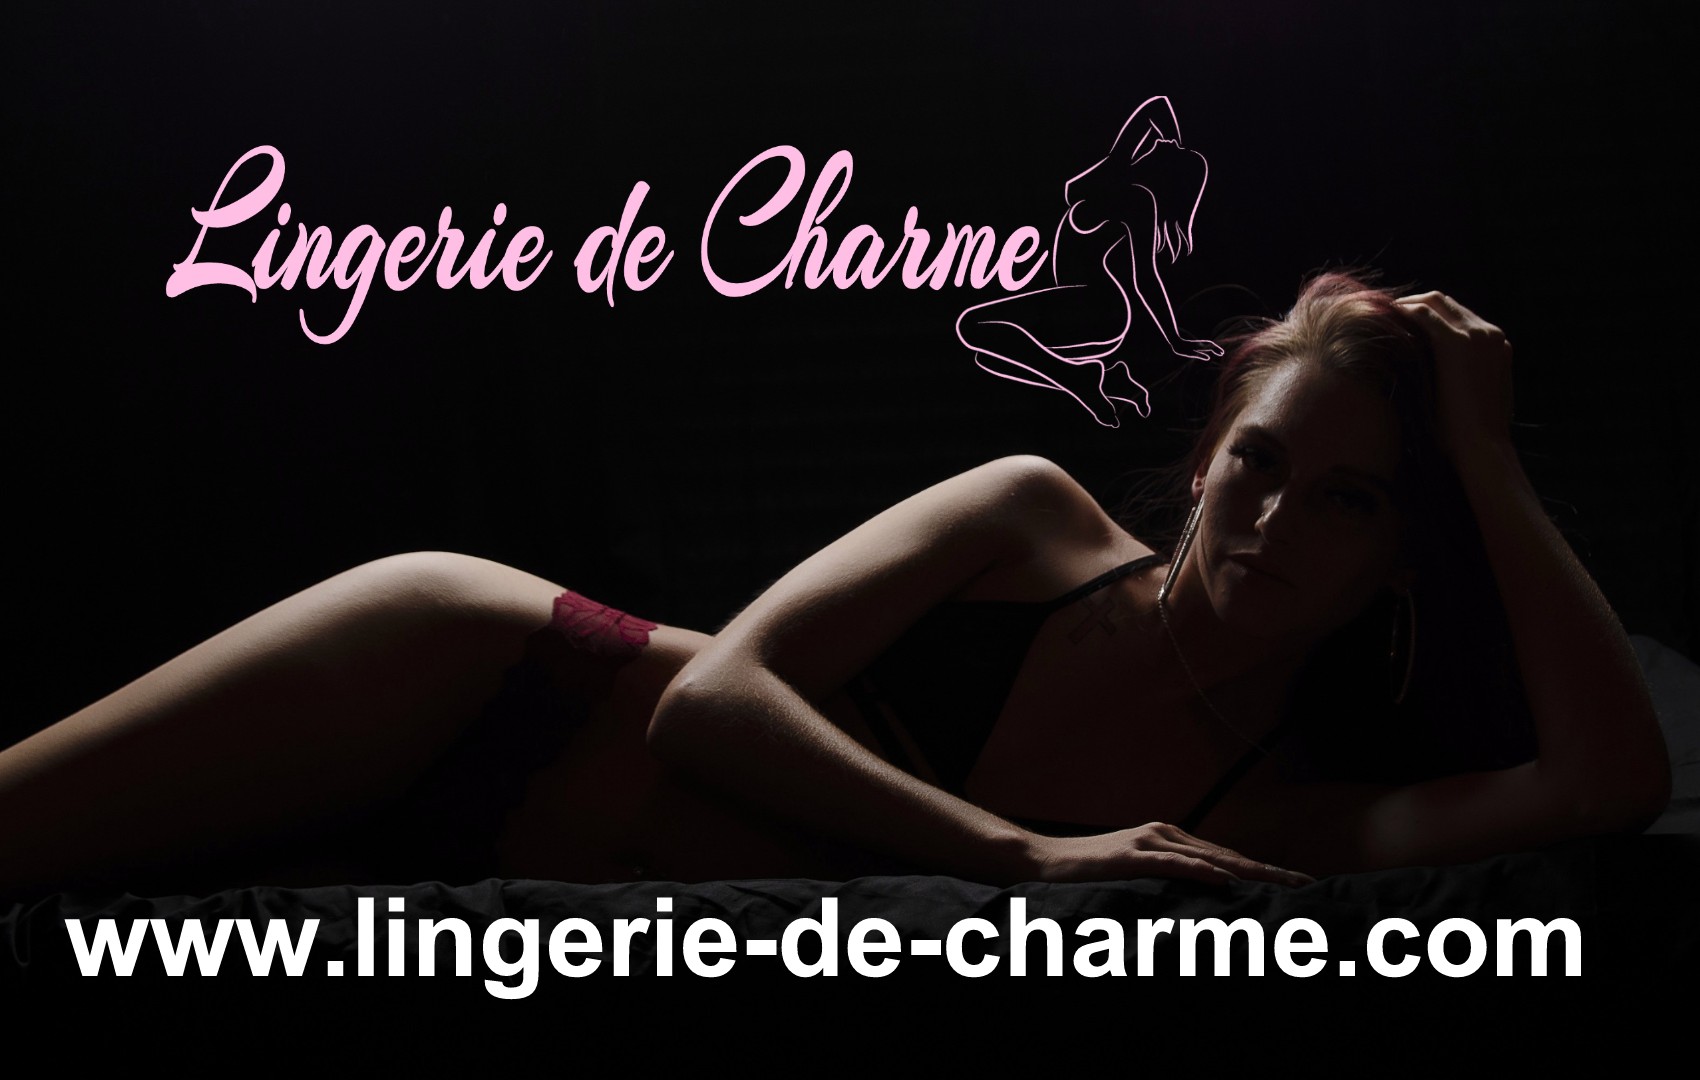 LINGERIE DE CHARME ANVILLE 16 - LINGERIE SEXY ANVILLE 16